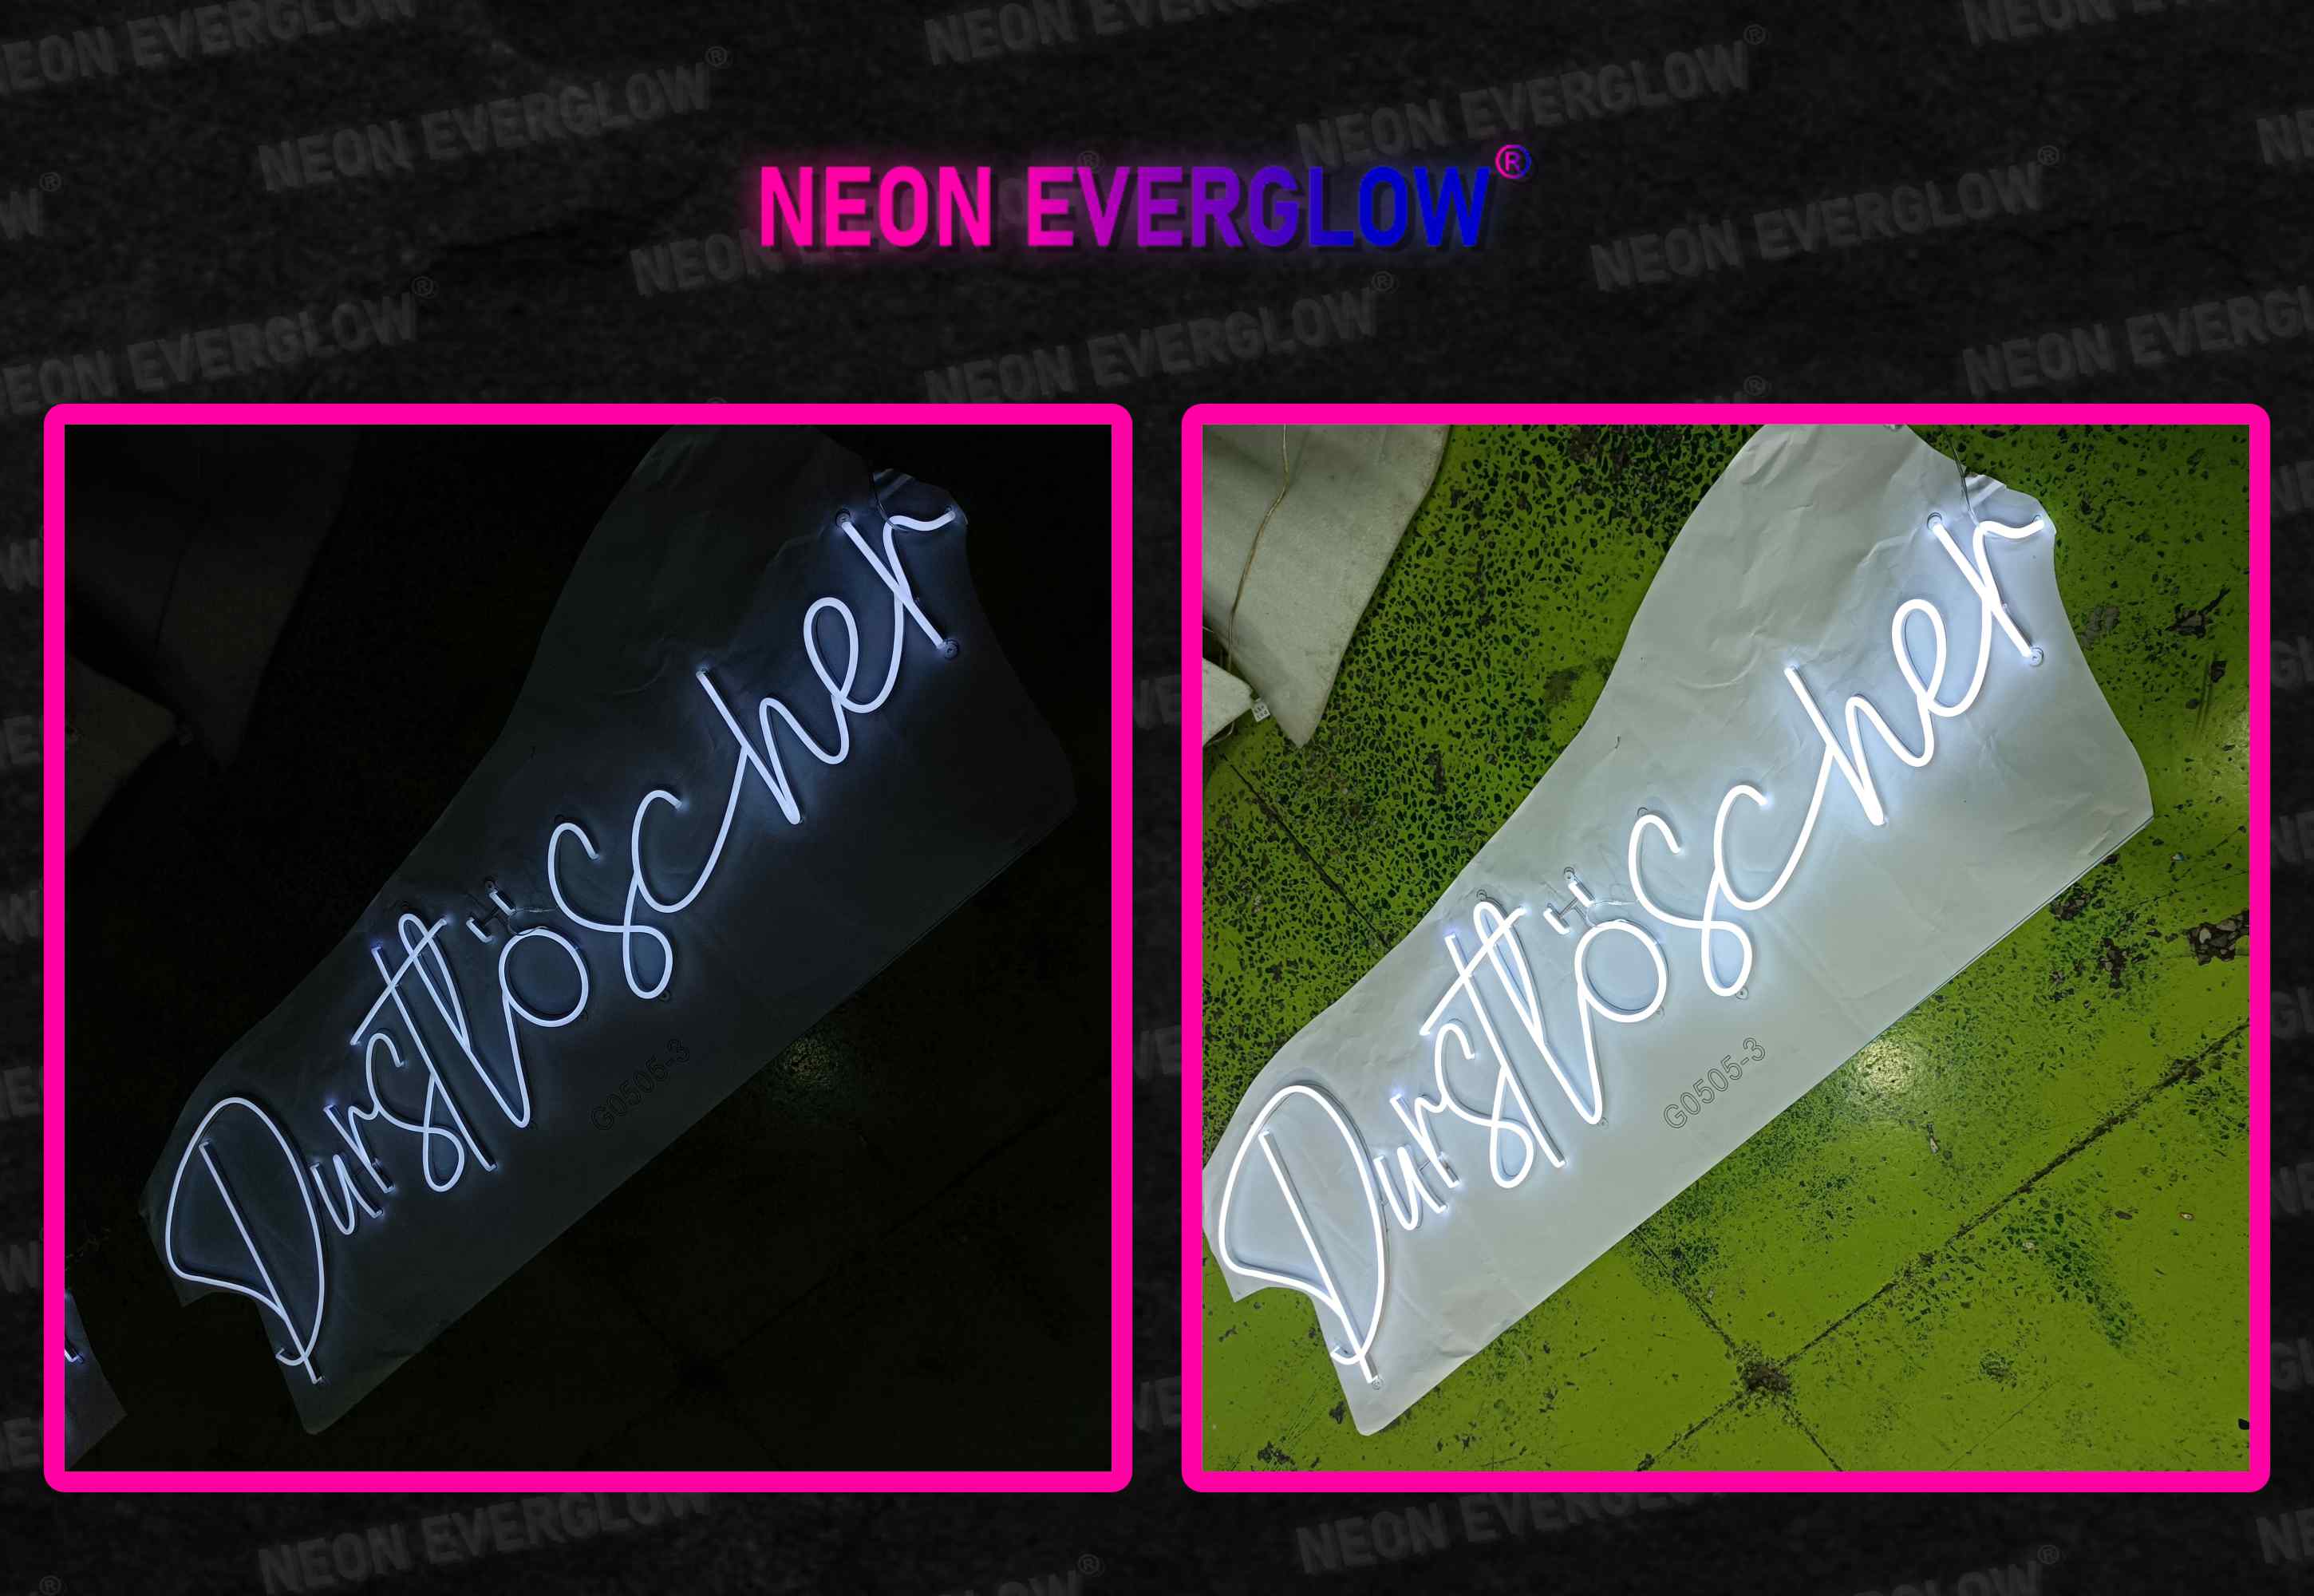 Sleep Tight LED Neon Schriftzug